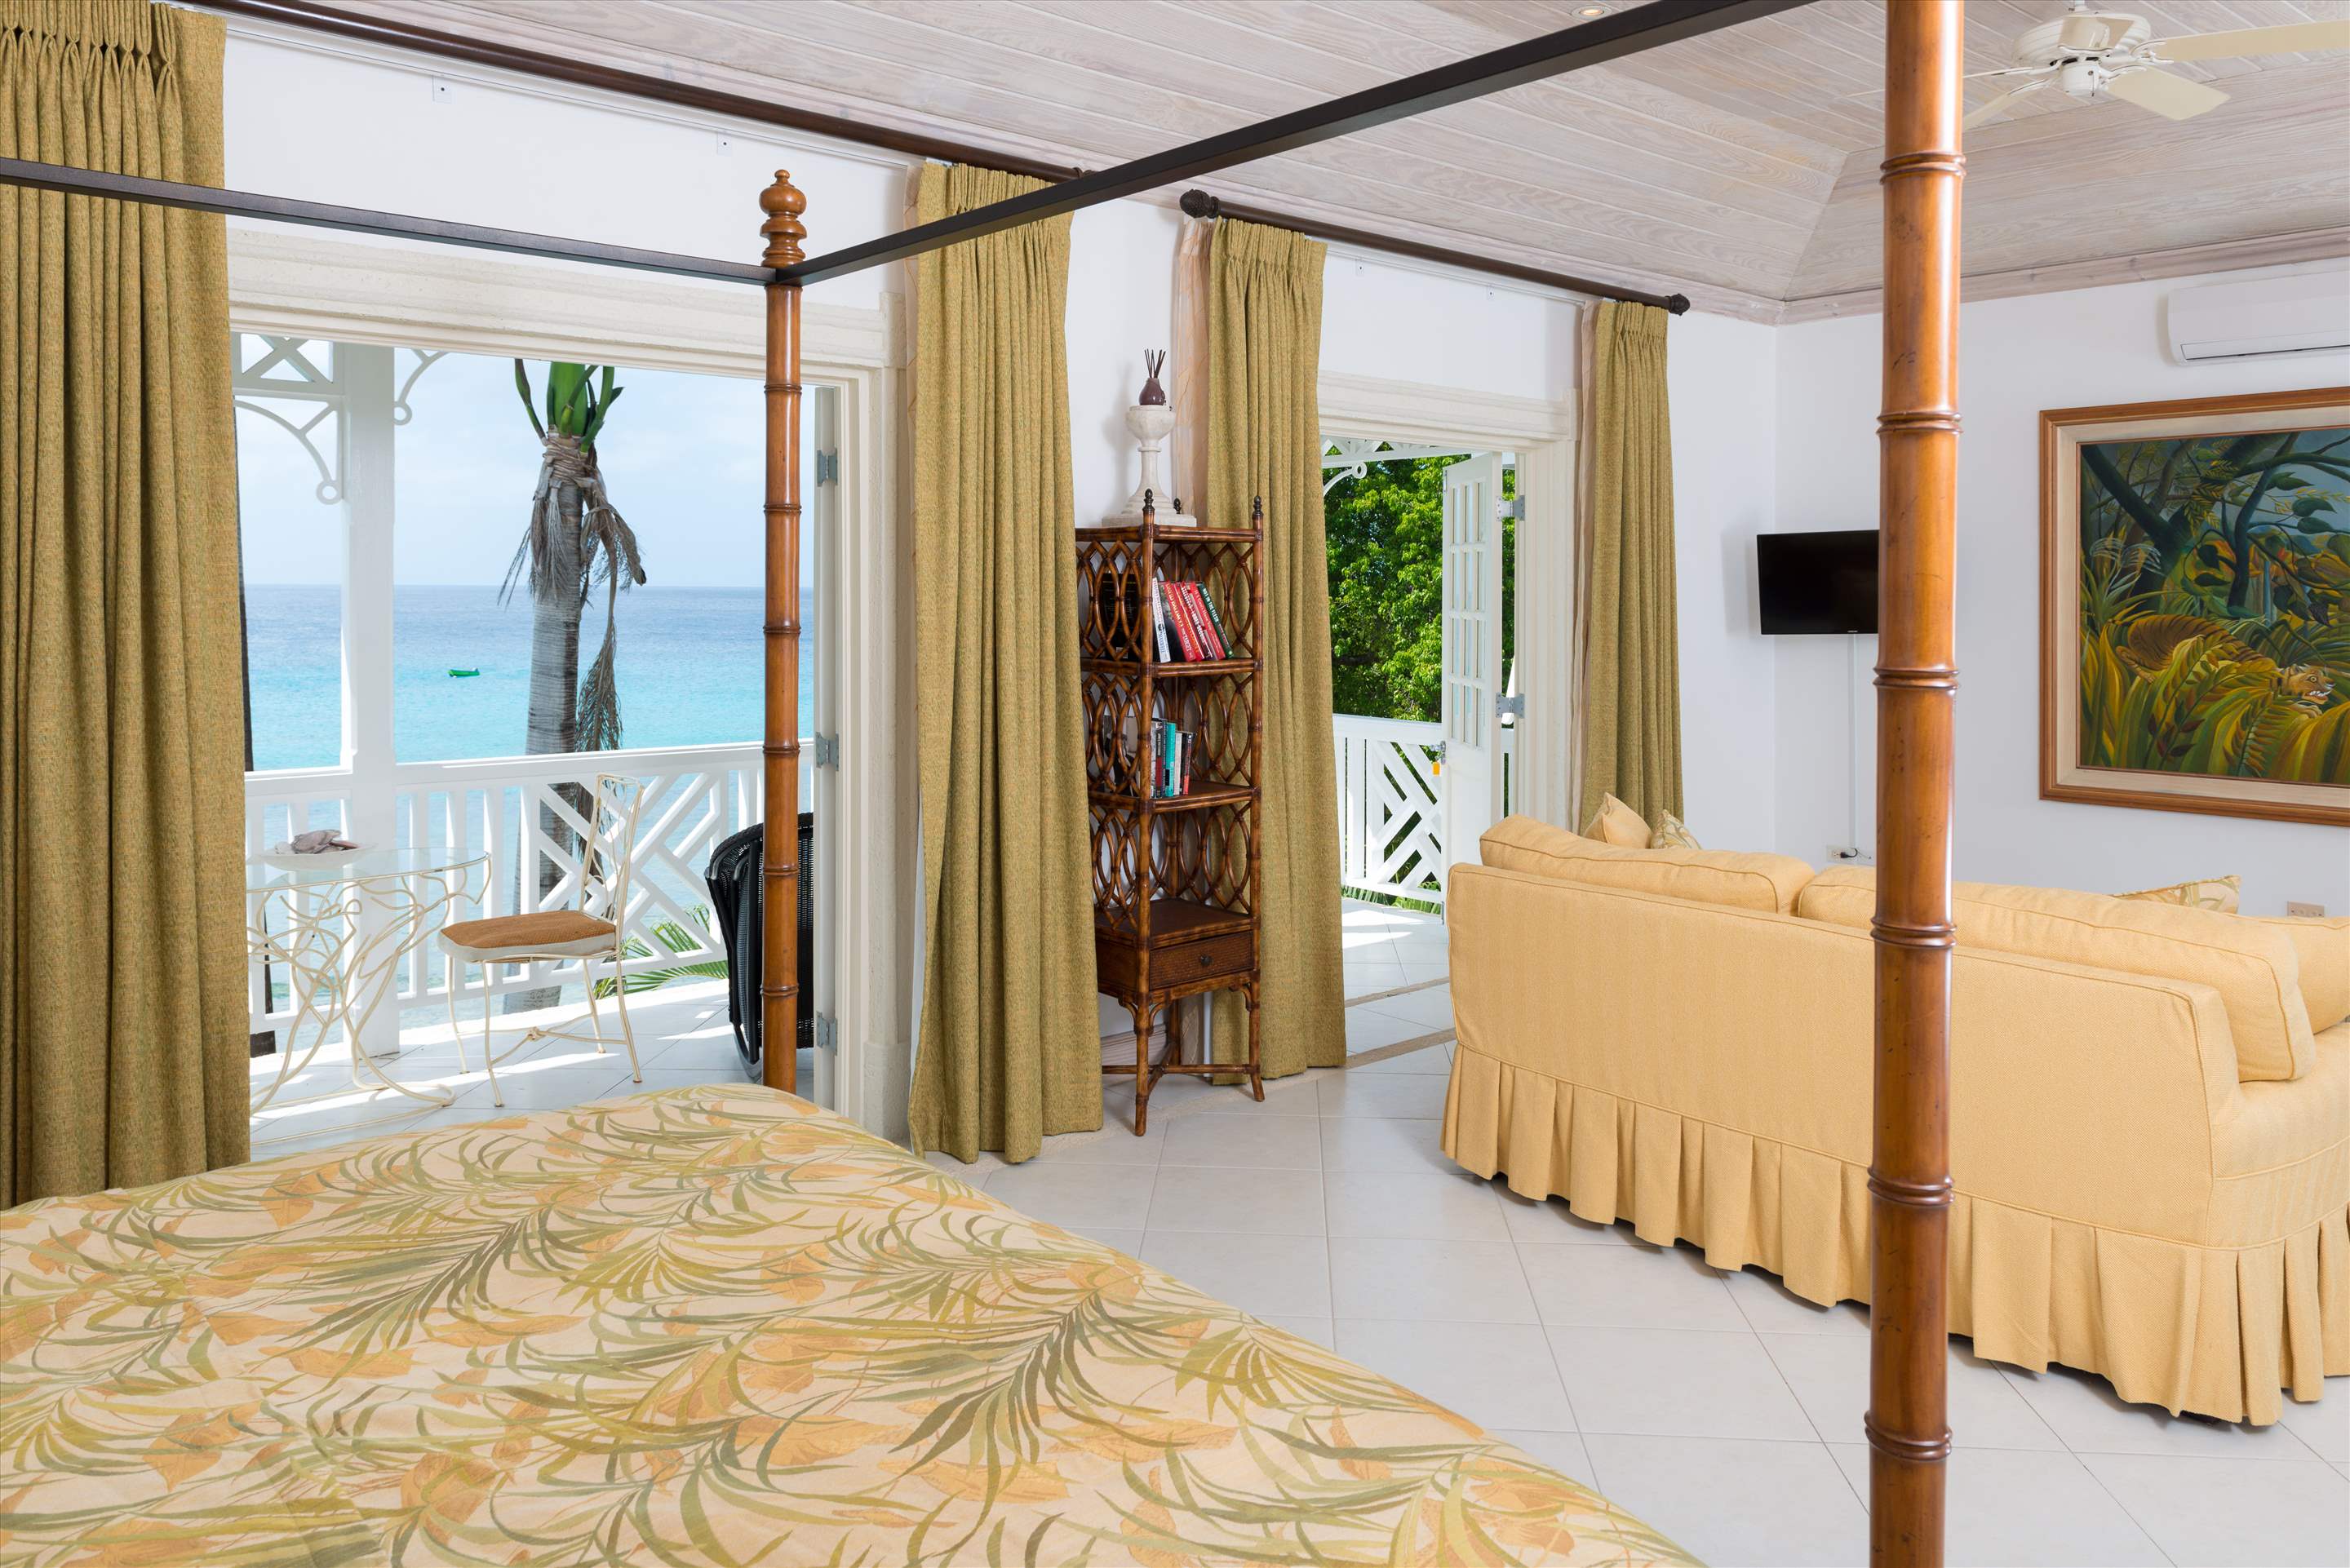 Chanel no.5, 3 bedroom villa in St. James & West Coast, Barbados Photo #14